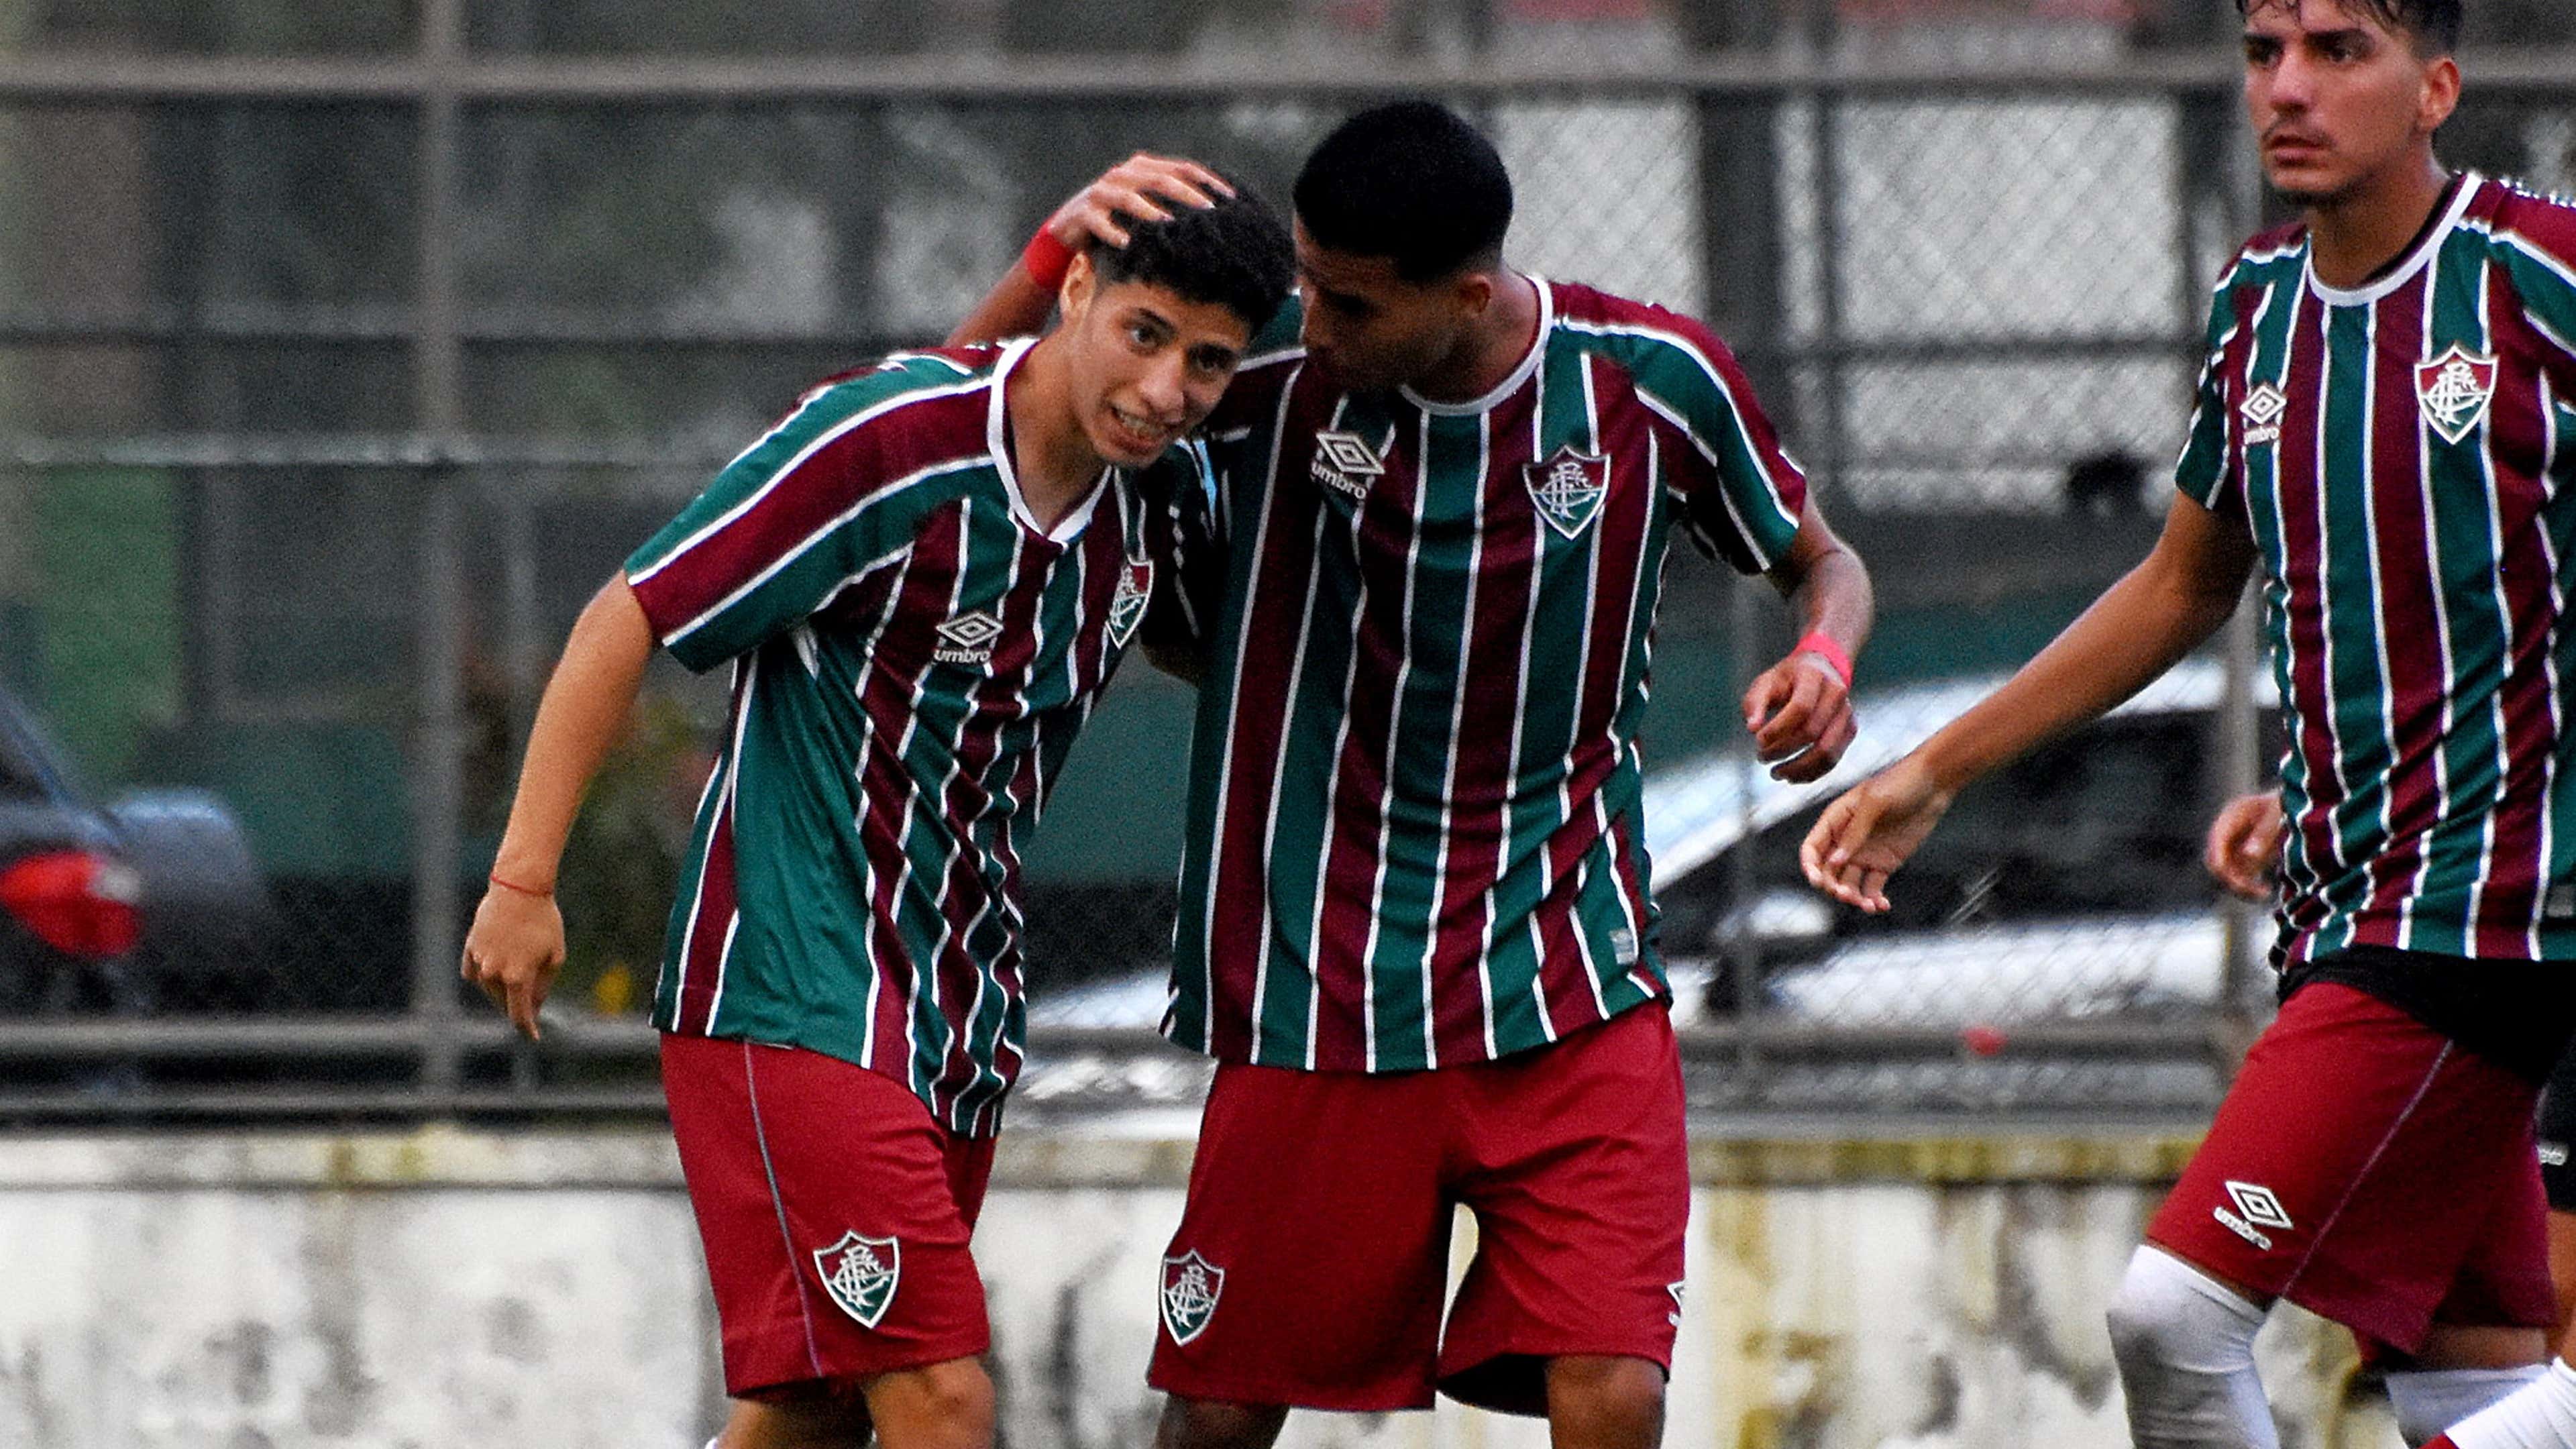 Campeonato Carioca Sub-15 Final - Jogo 2, Fluminense x Flamengo, Jogos do  Futebol de Base